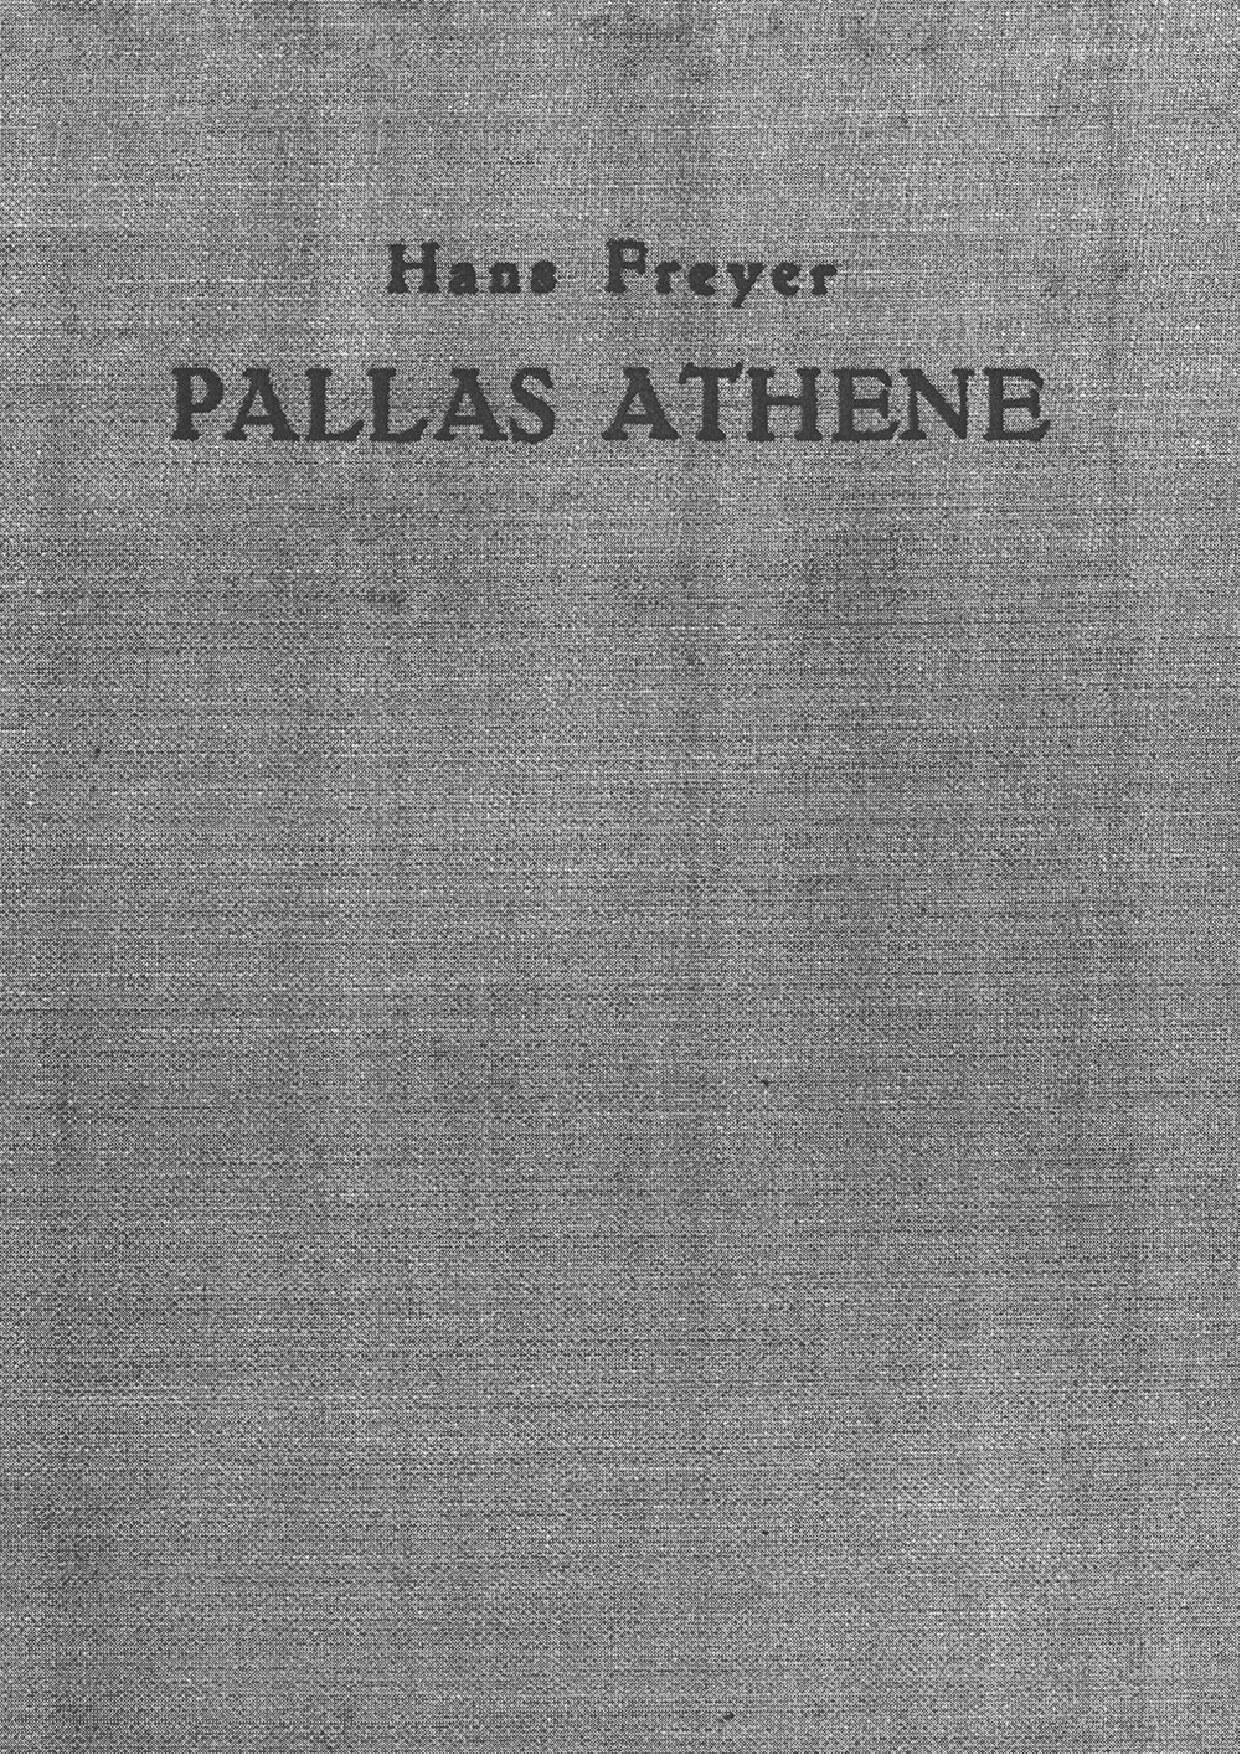 Pallas Athene - Ethik des politischen Volkes